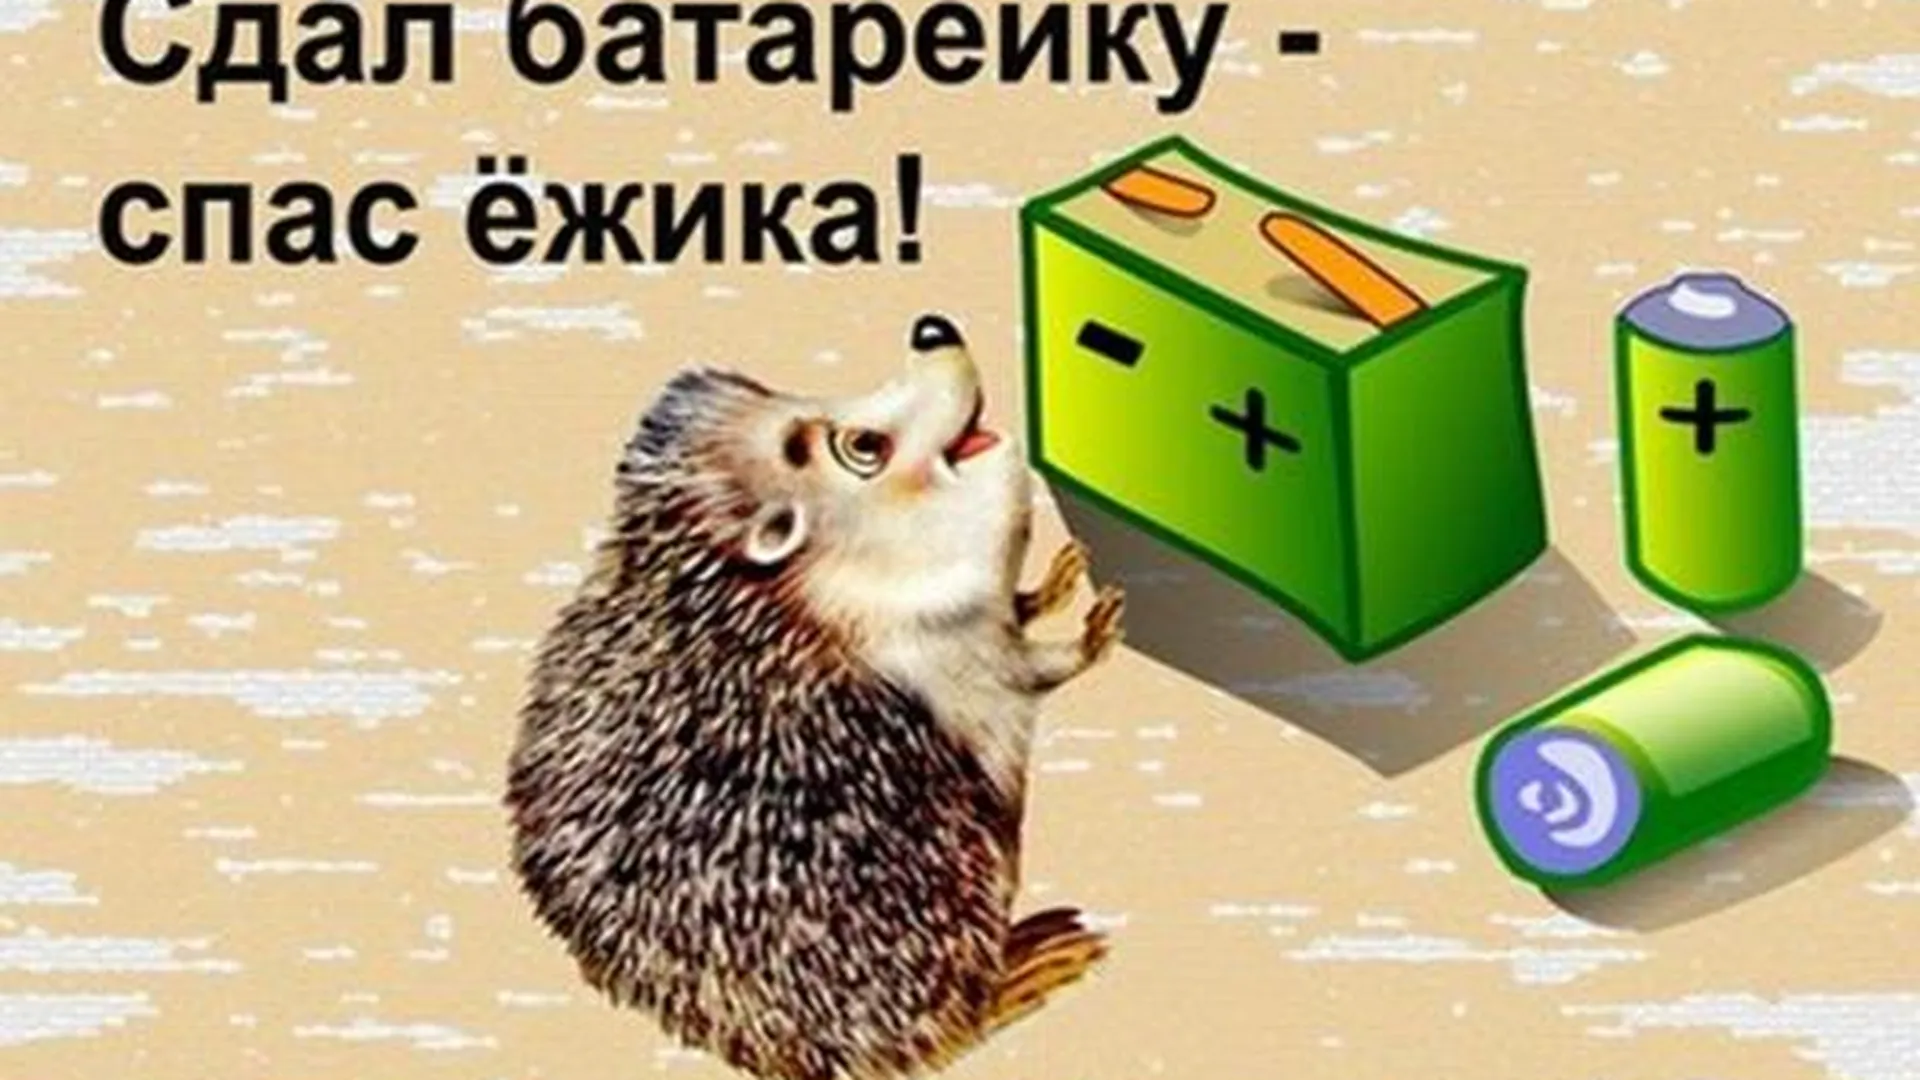 Акция «Сдал батарейку – спас ежика!» ВКонтакте